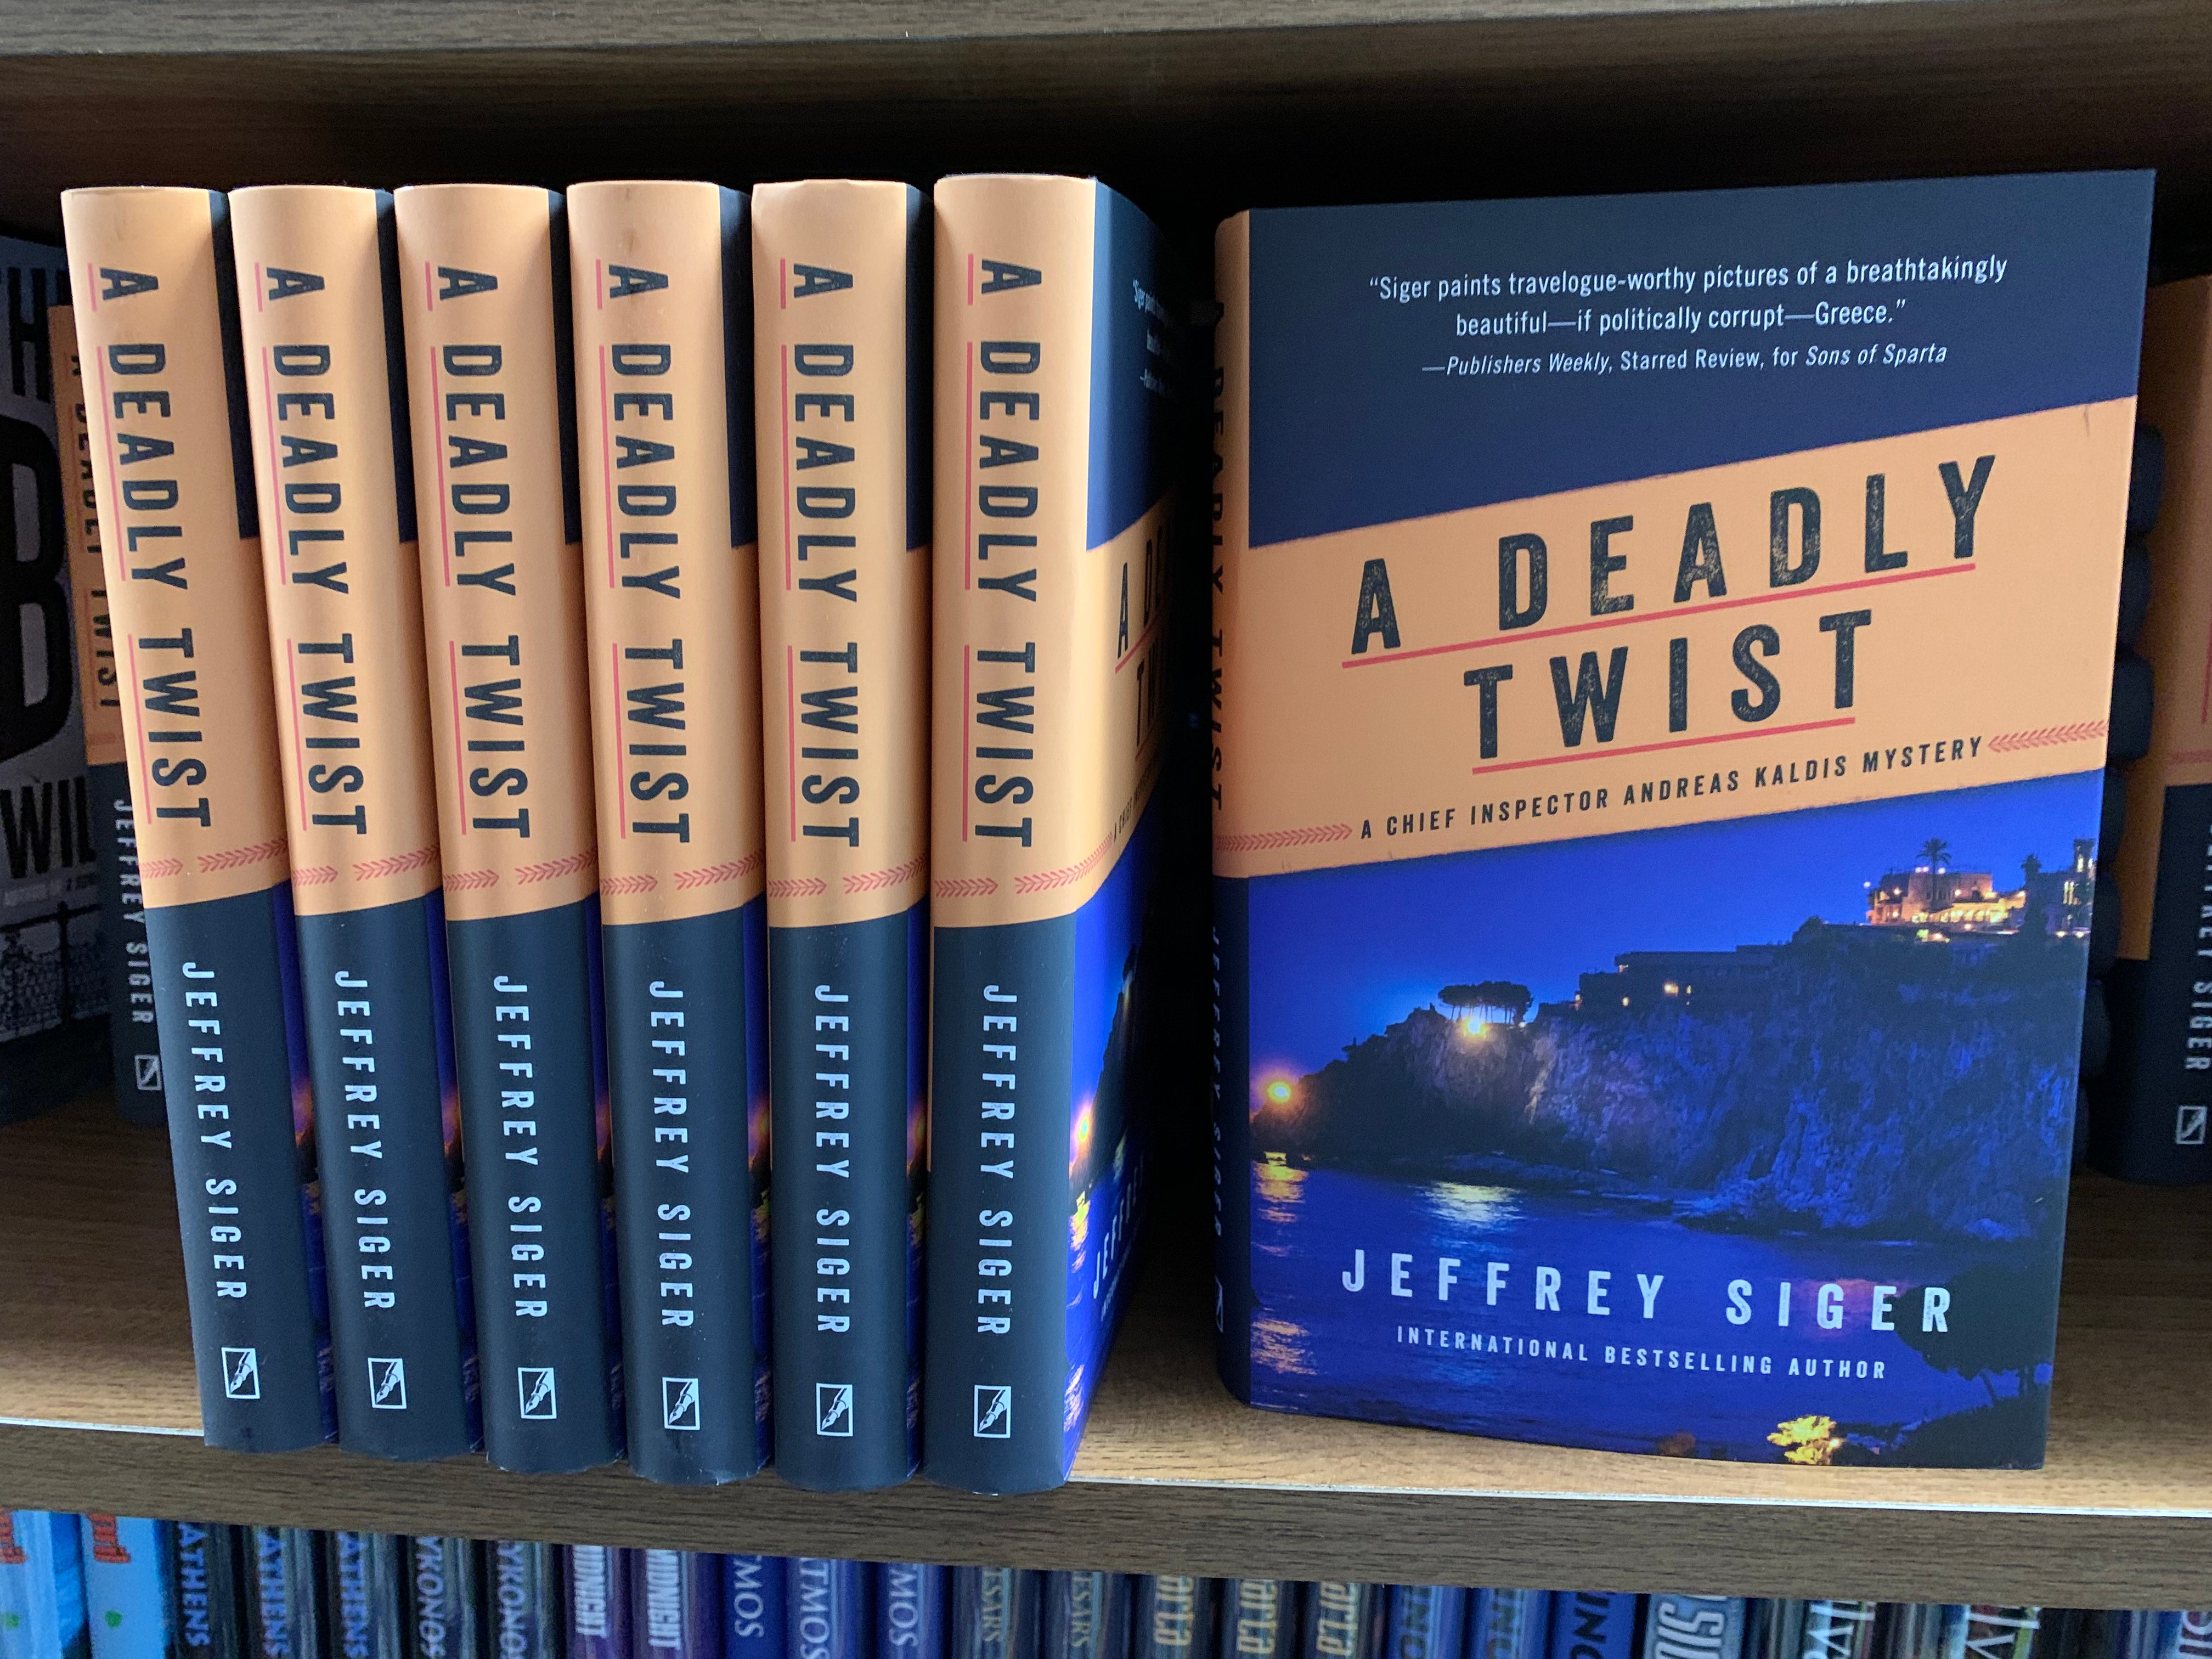 A Deadly Twist by Jeffrey Siger